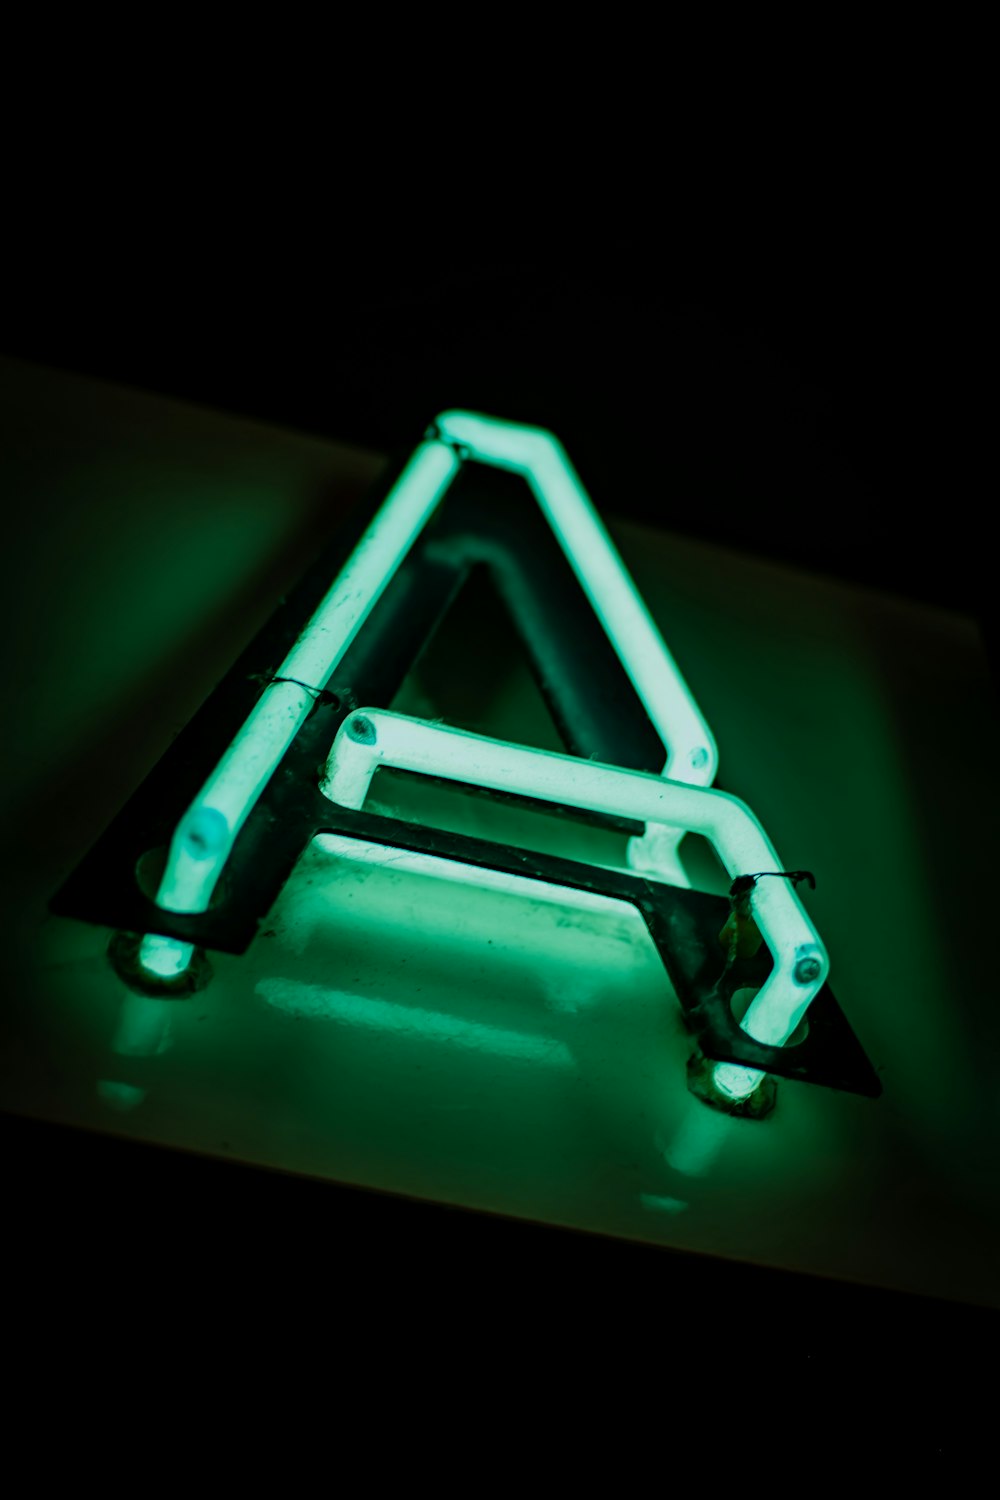 une enseigne au néon en forme de triangle posée sur une table